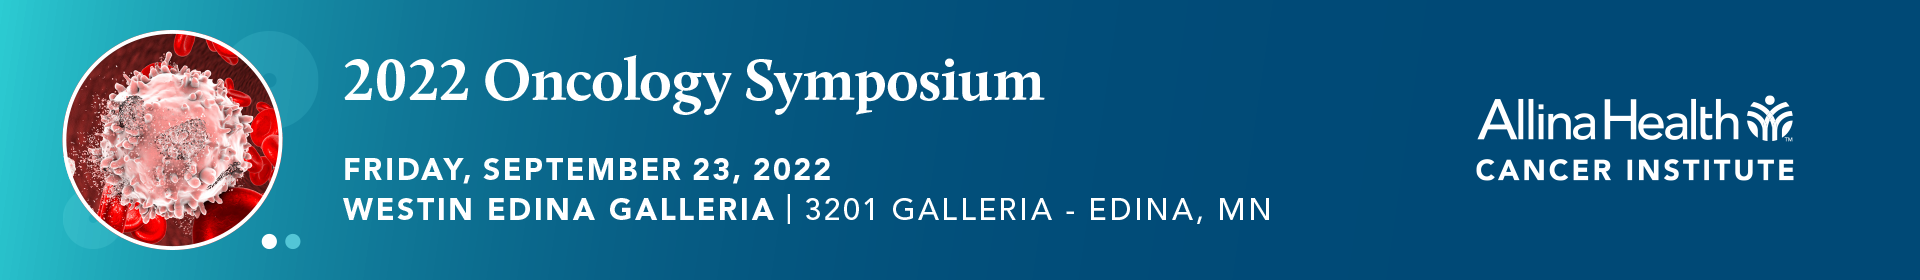 22-873473 AHCI 2022 Cancer Care Symposium - Eventbrite 960x140 Header Westin @2x